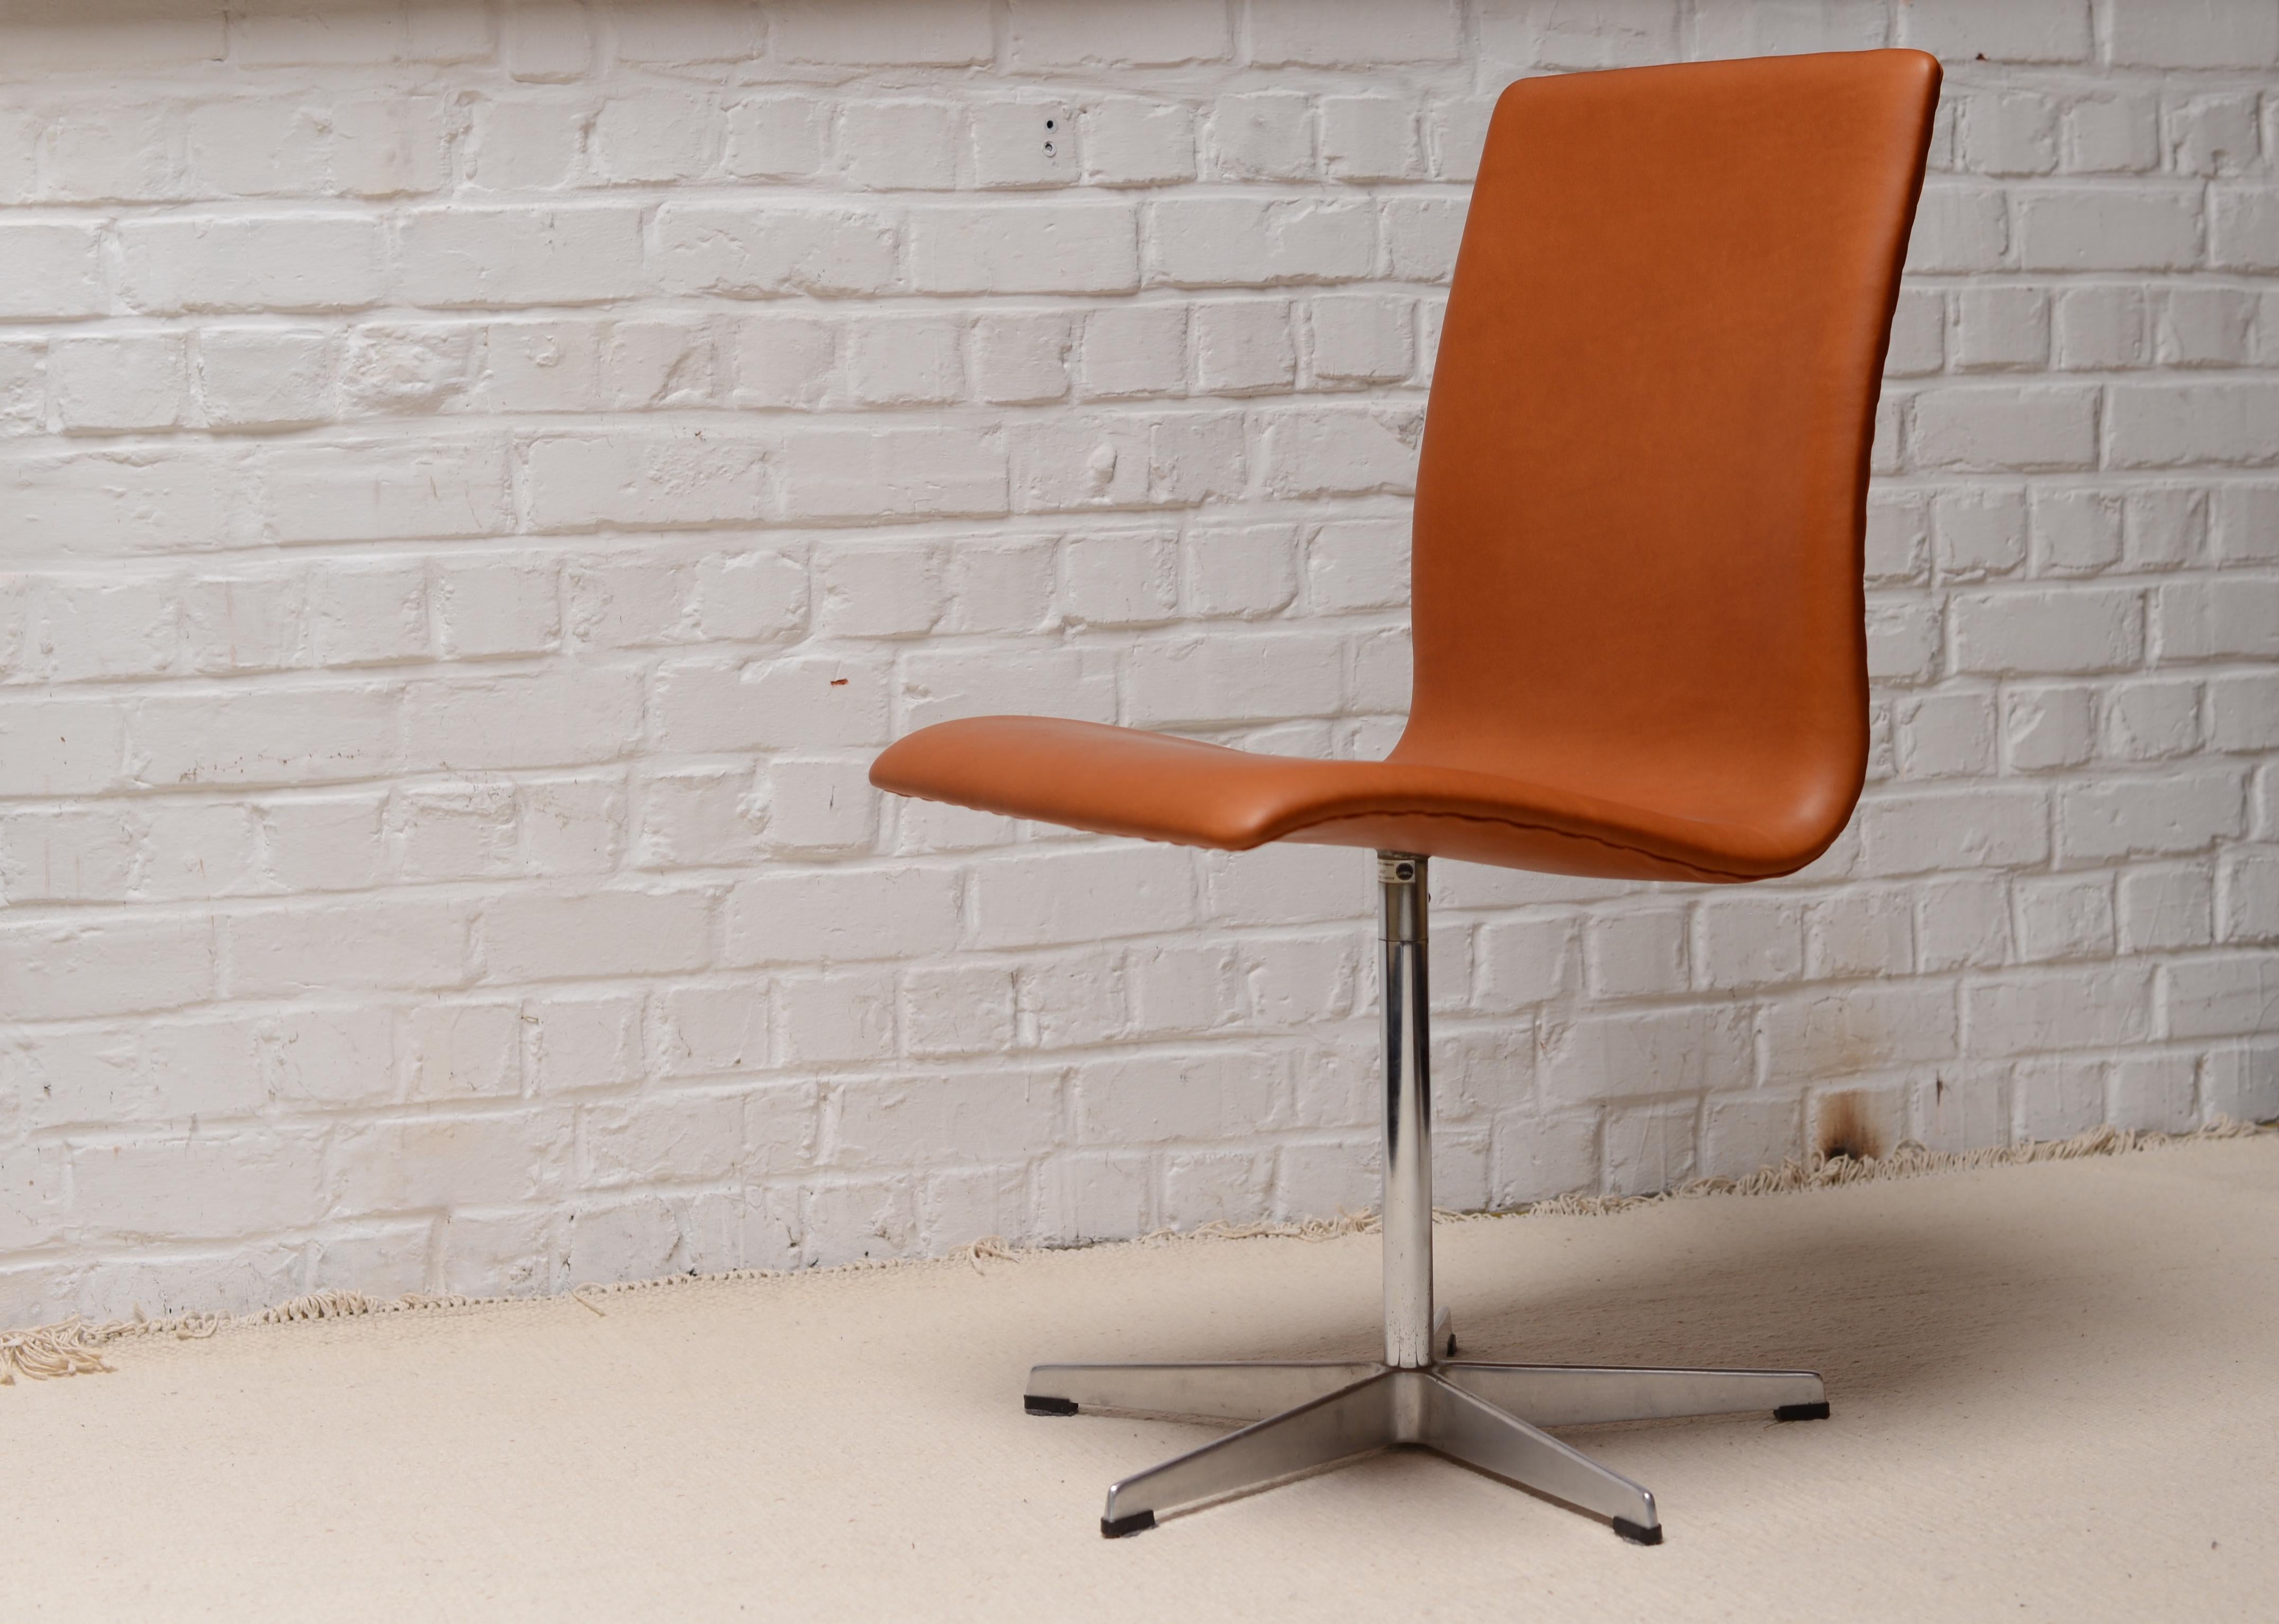 Chaise Oxford originale datant de mars 1967 fabriquée par Fritz Hansen au Danemark. Cette chaise a été conçue pour la commission spéciale du collège Sainte-Catherine d'Oxford. Il est composé d'une structure en contreplaqué, de cuir et de pieds en